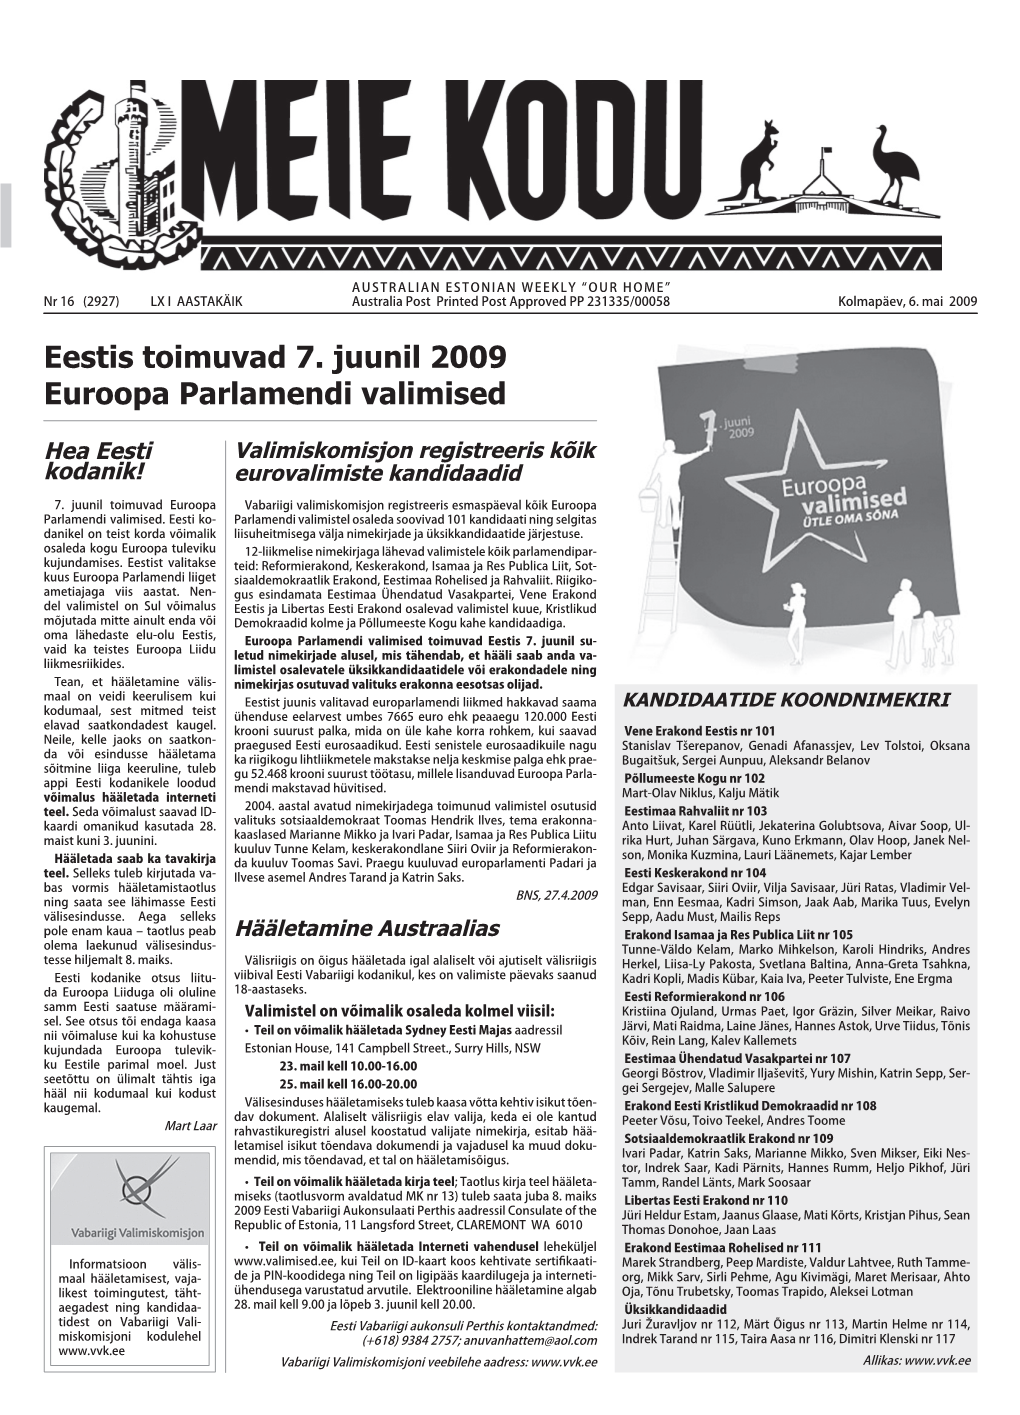 Eestis Toimuvad 7. Juunil 2009 Euroopa Parlamendi Valimised